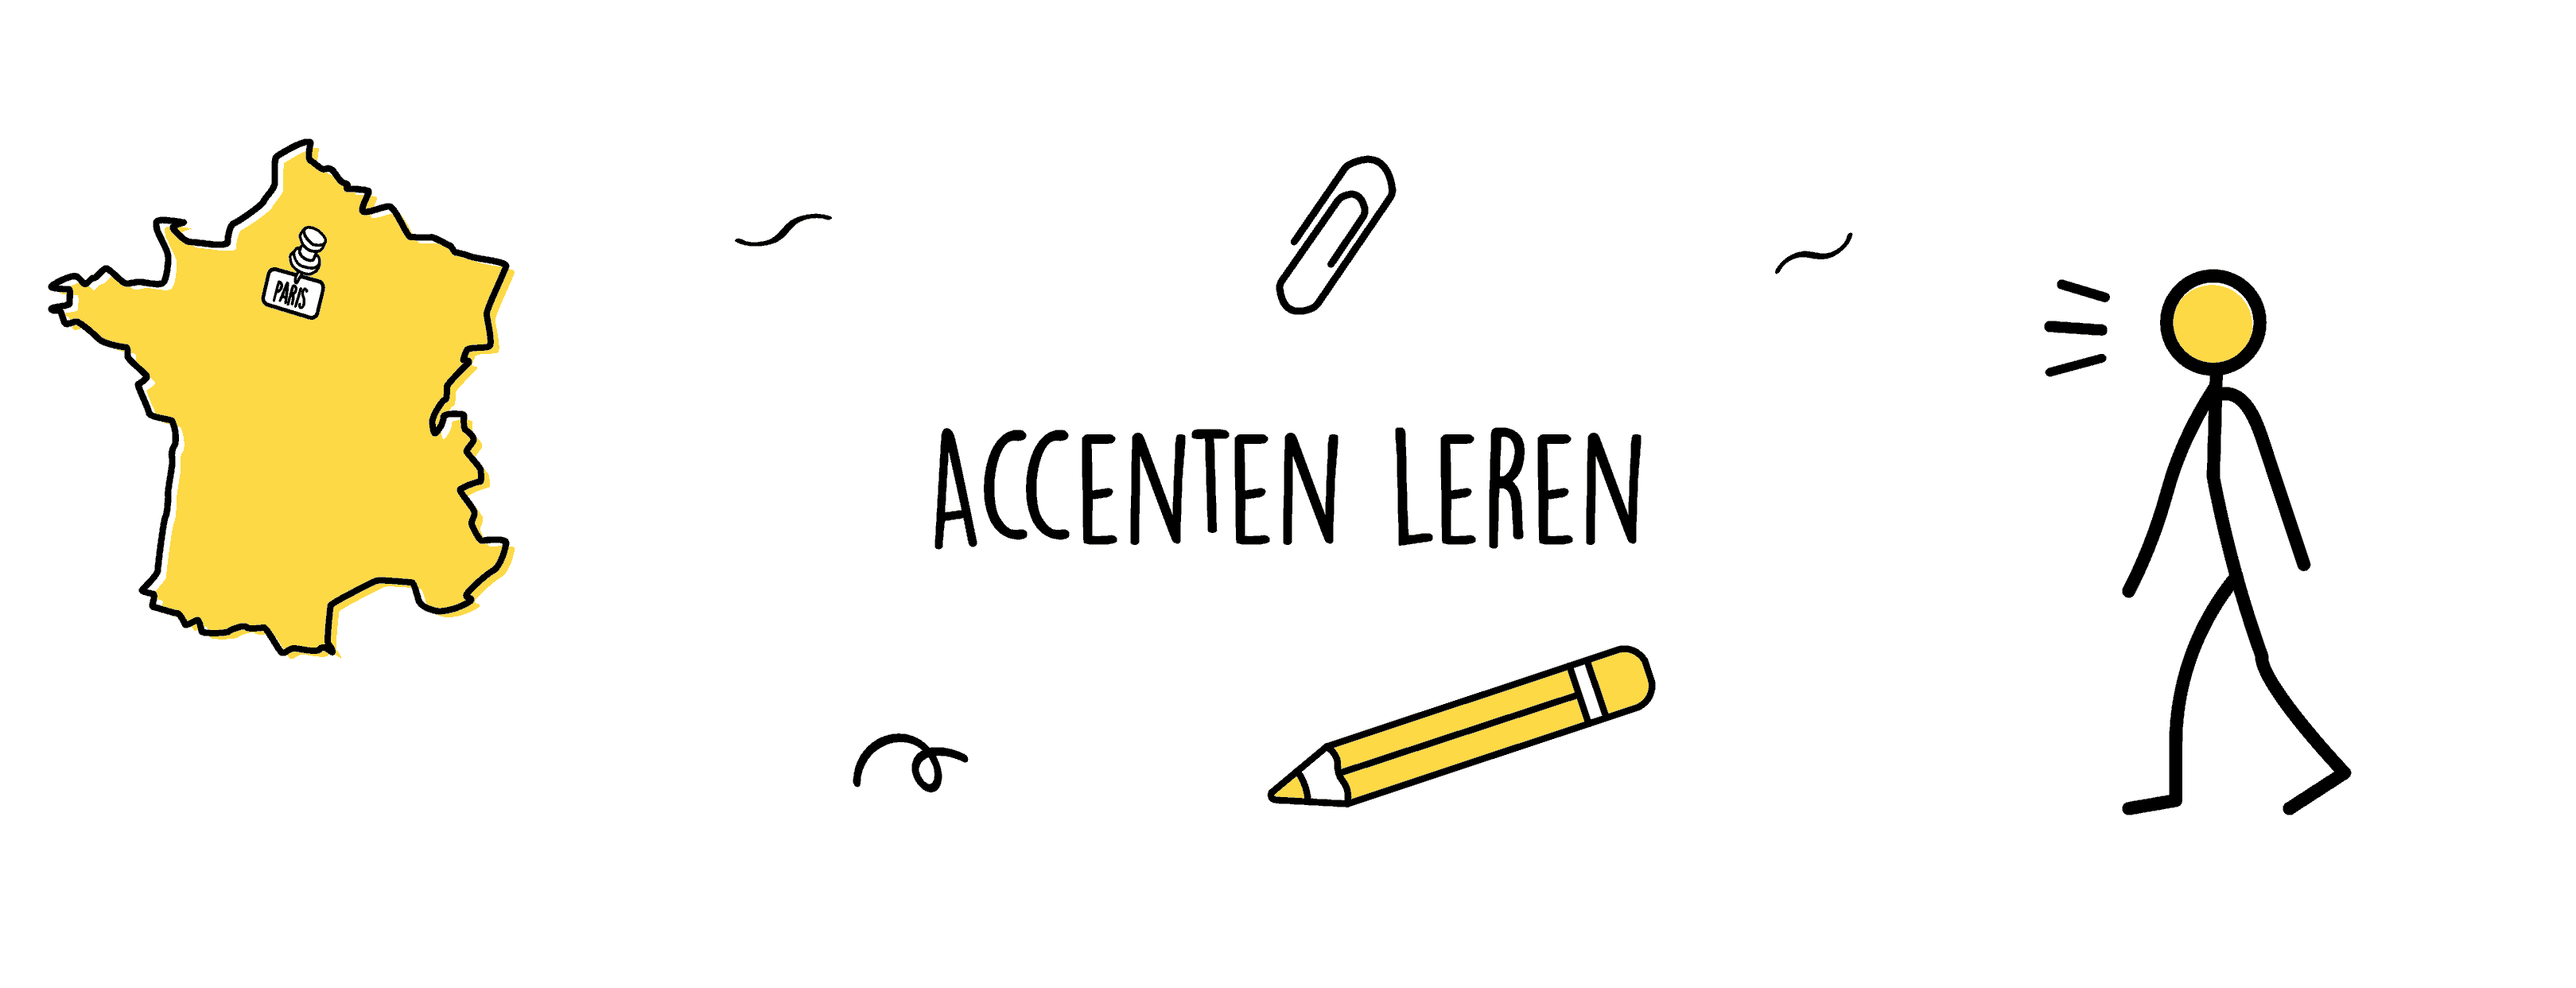 Frans – Accenten Leren - Mr. Chadd Academy